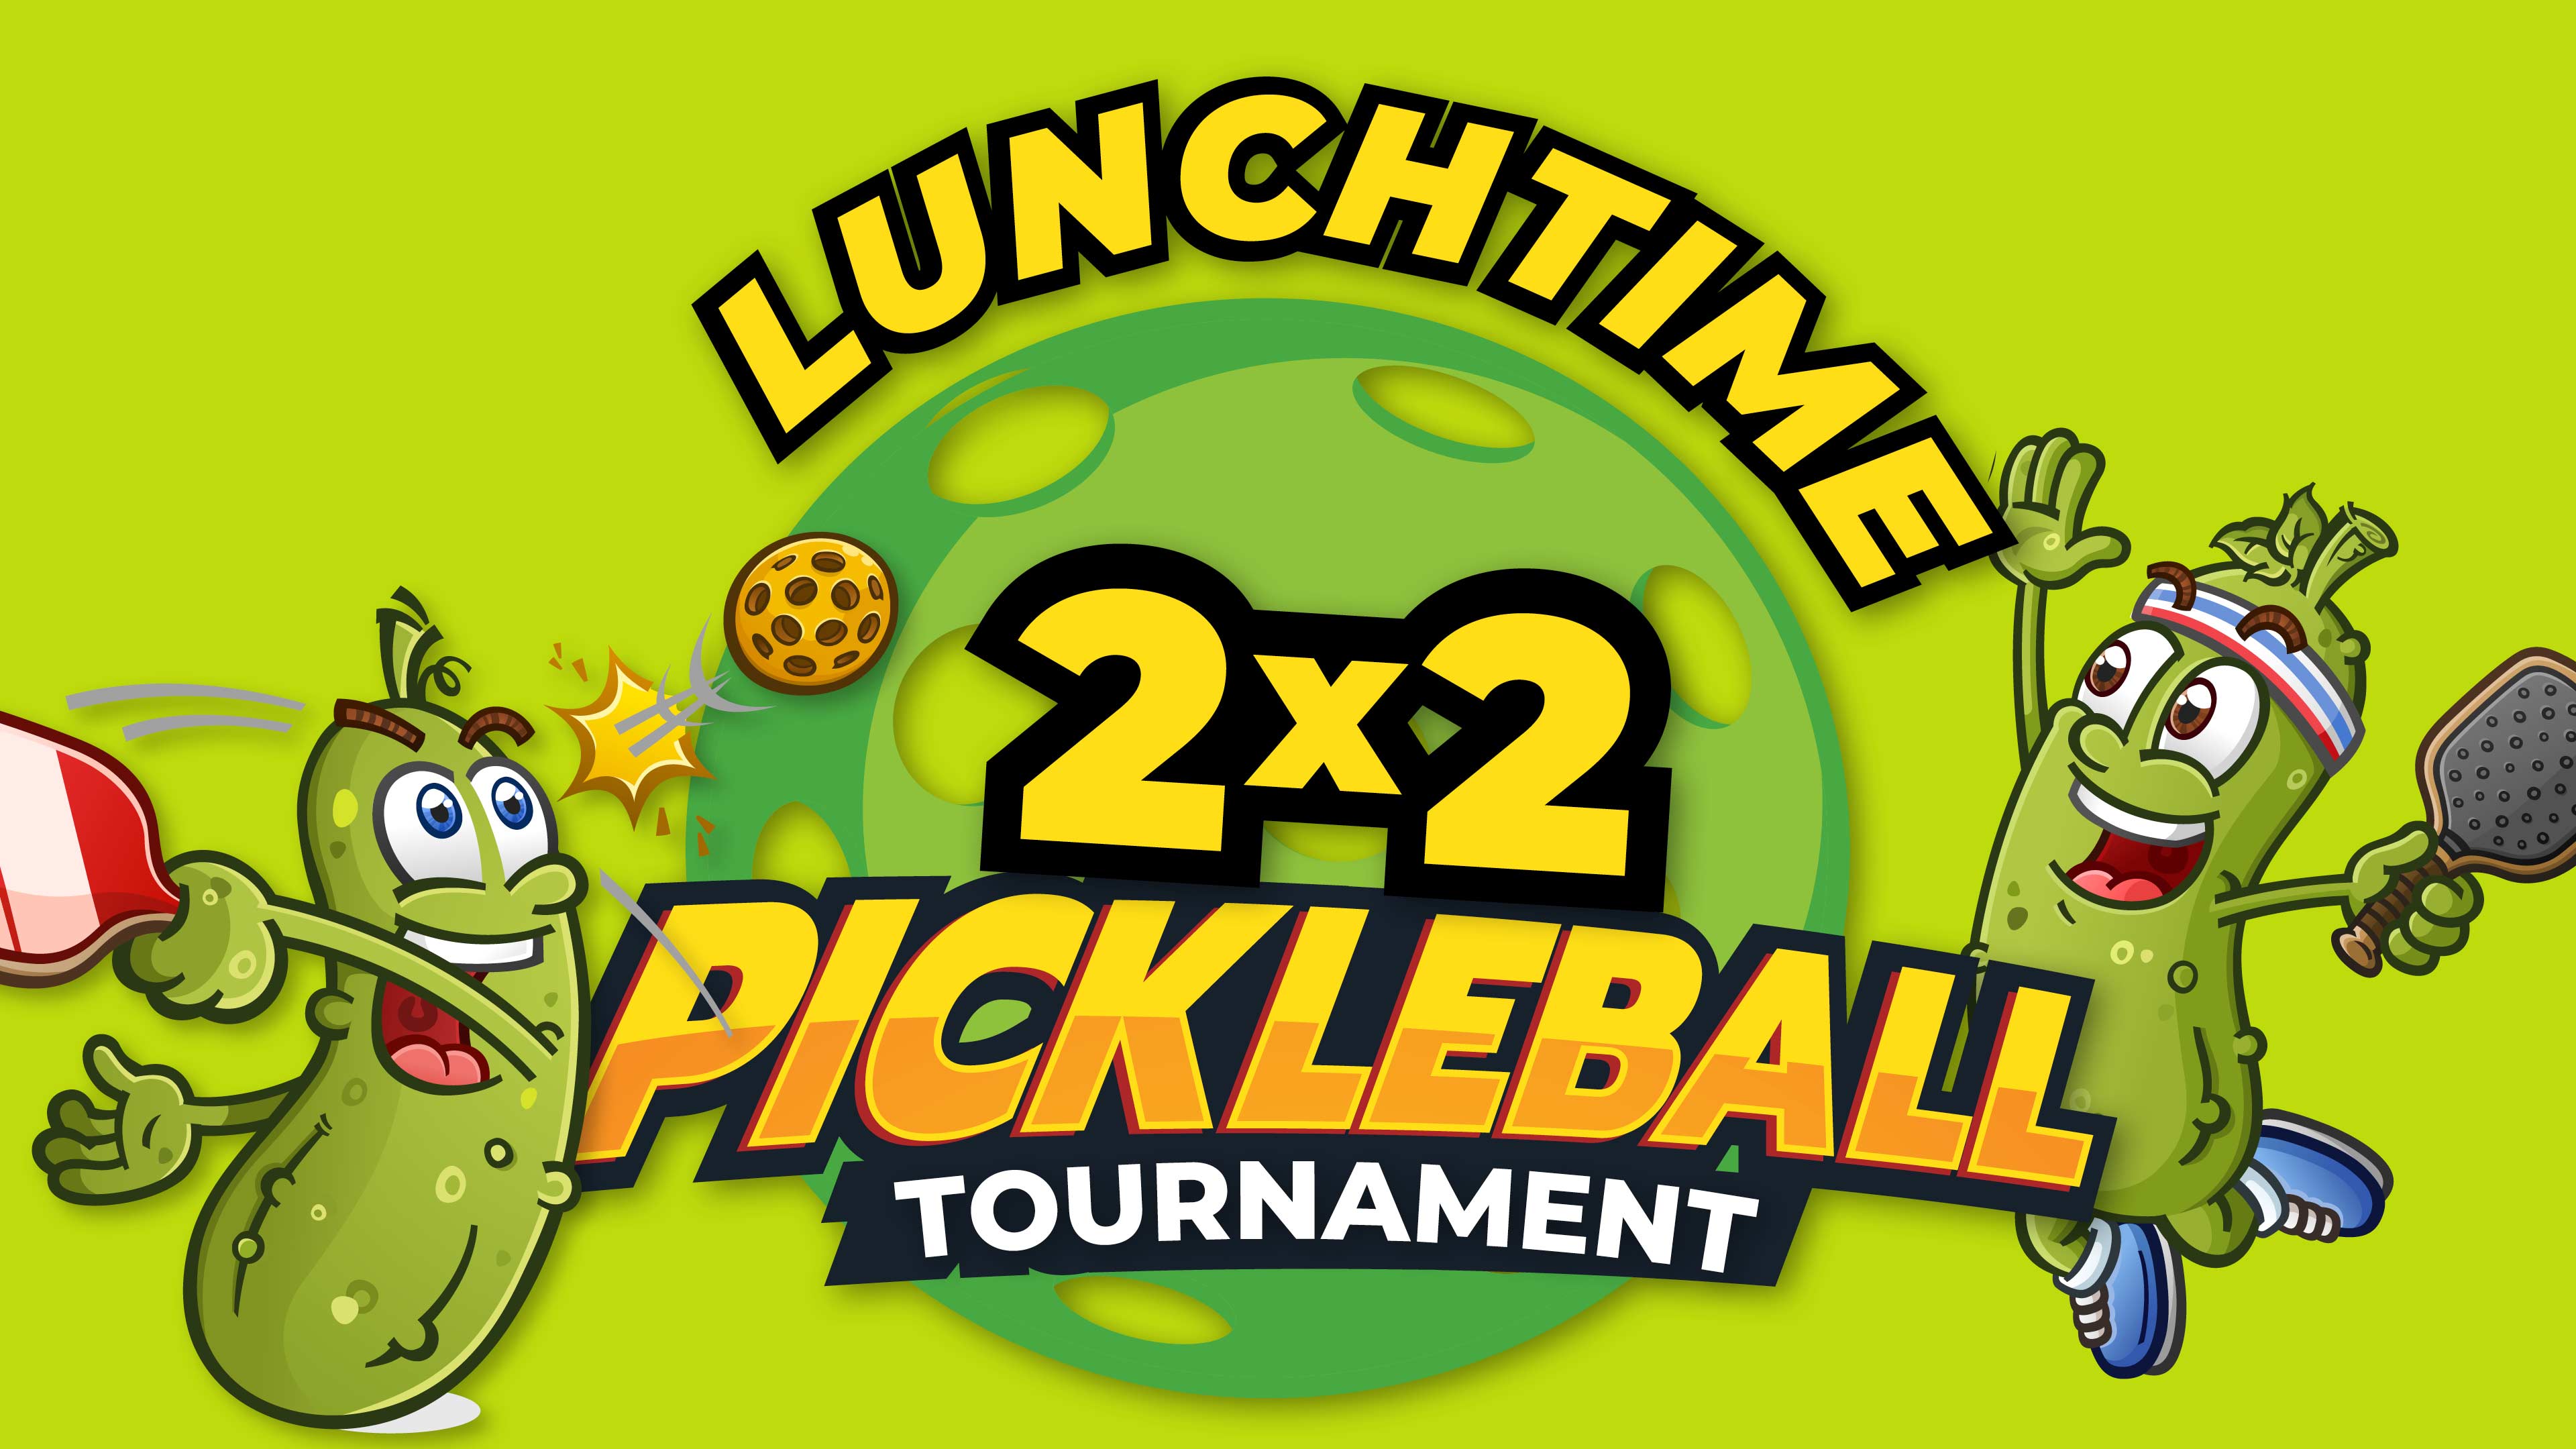 2x2 Pickleball Tournament